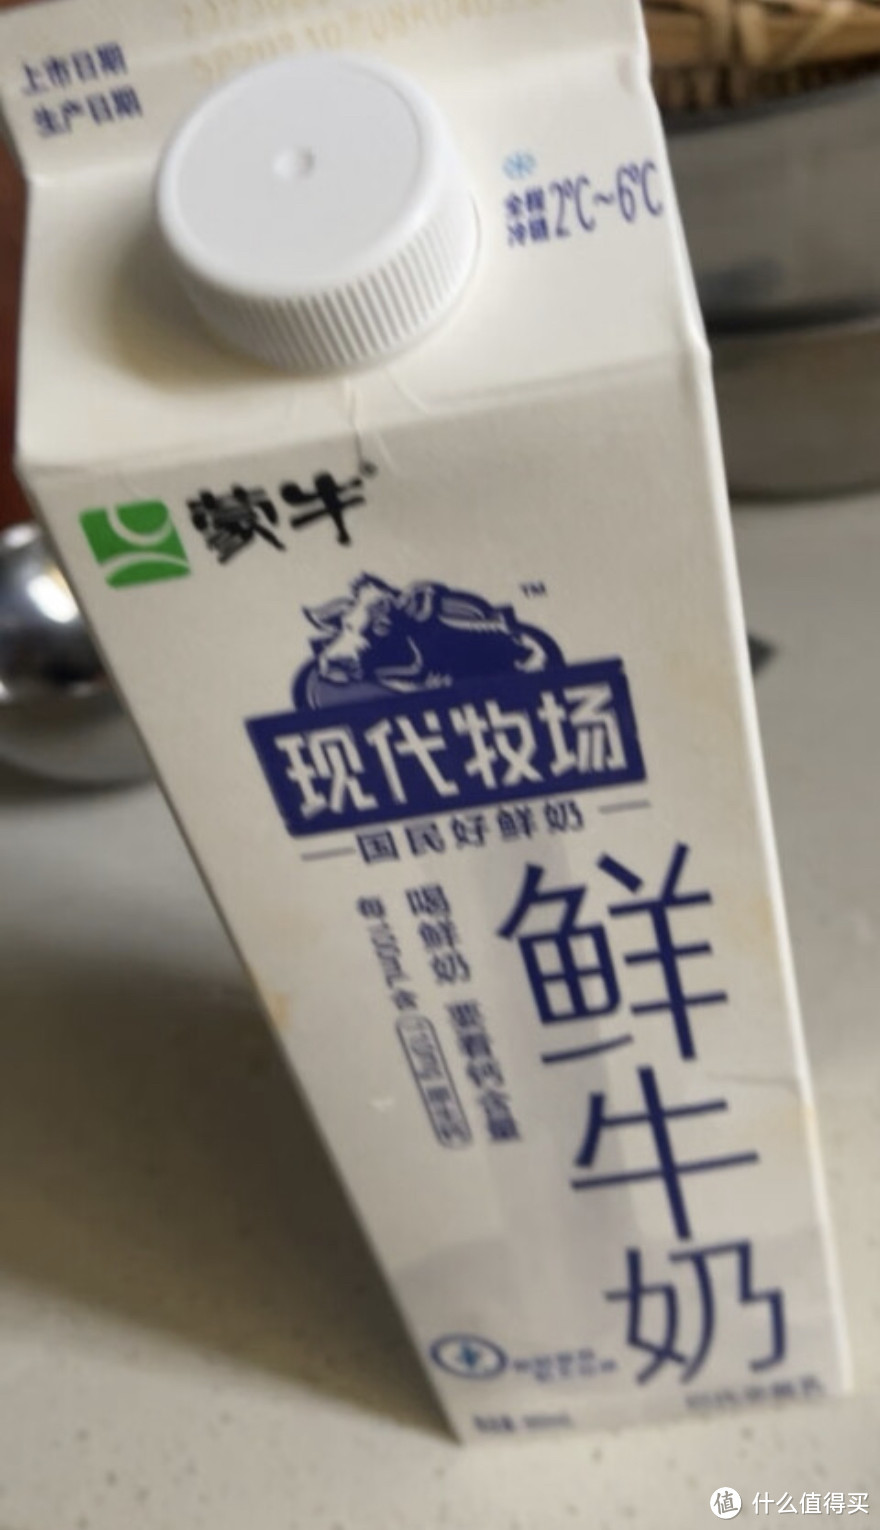 分享我的日常鲜奶-蒙牛和伊利鲜奶